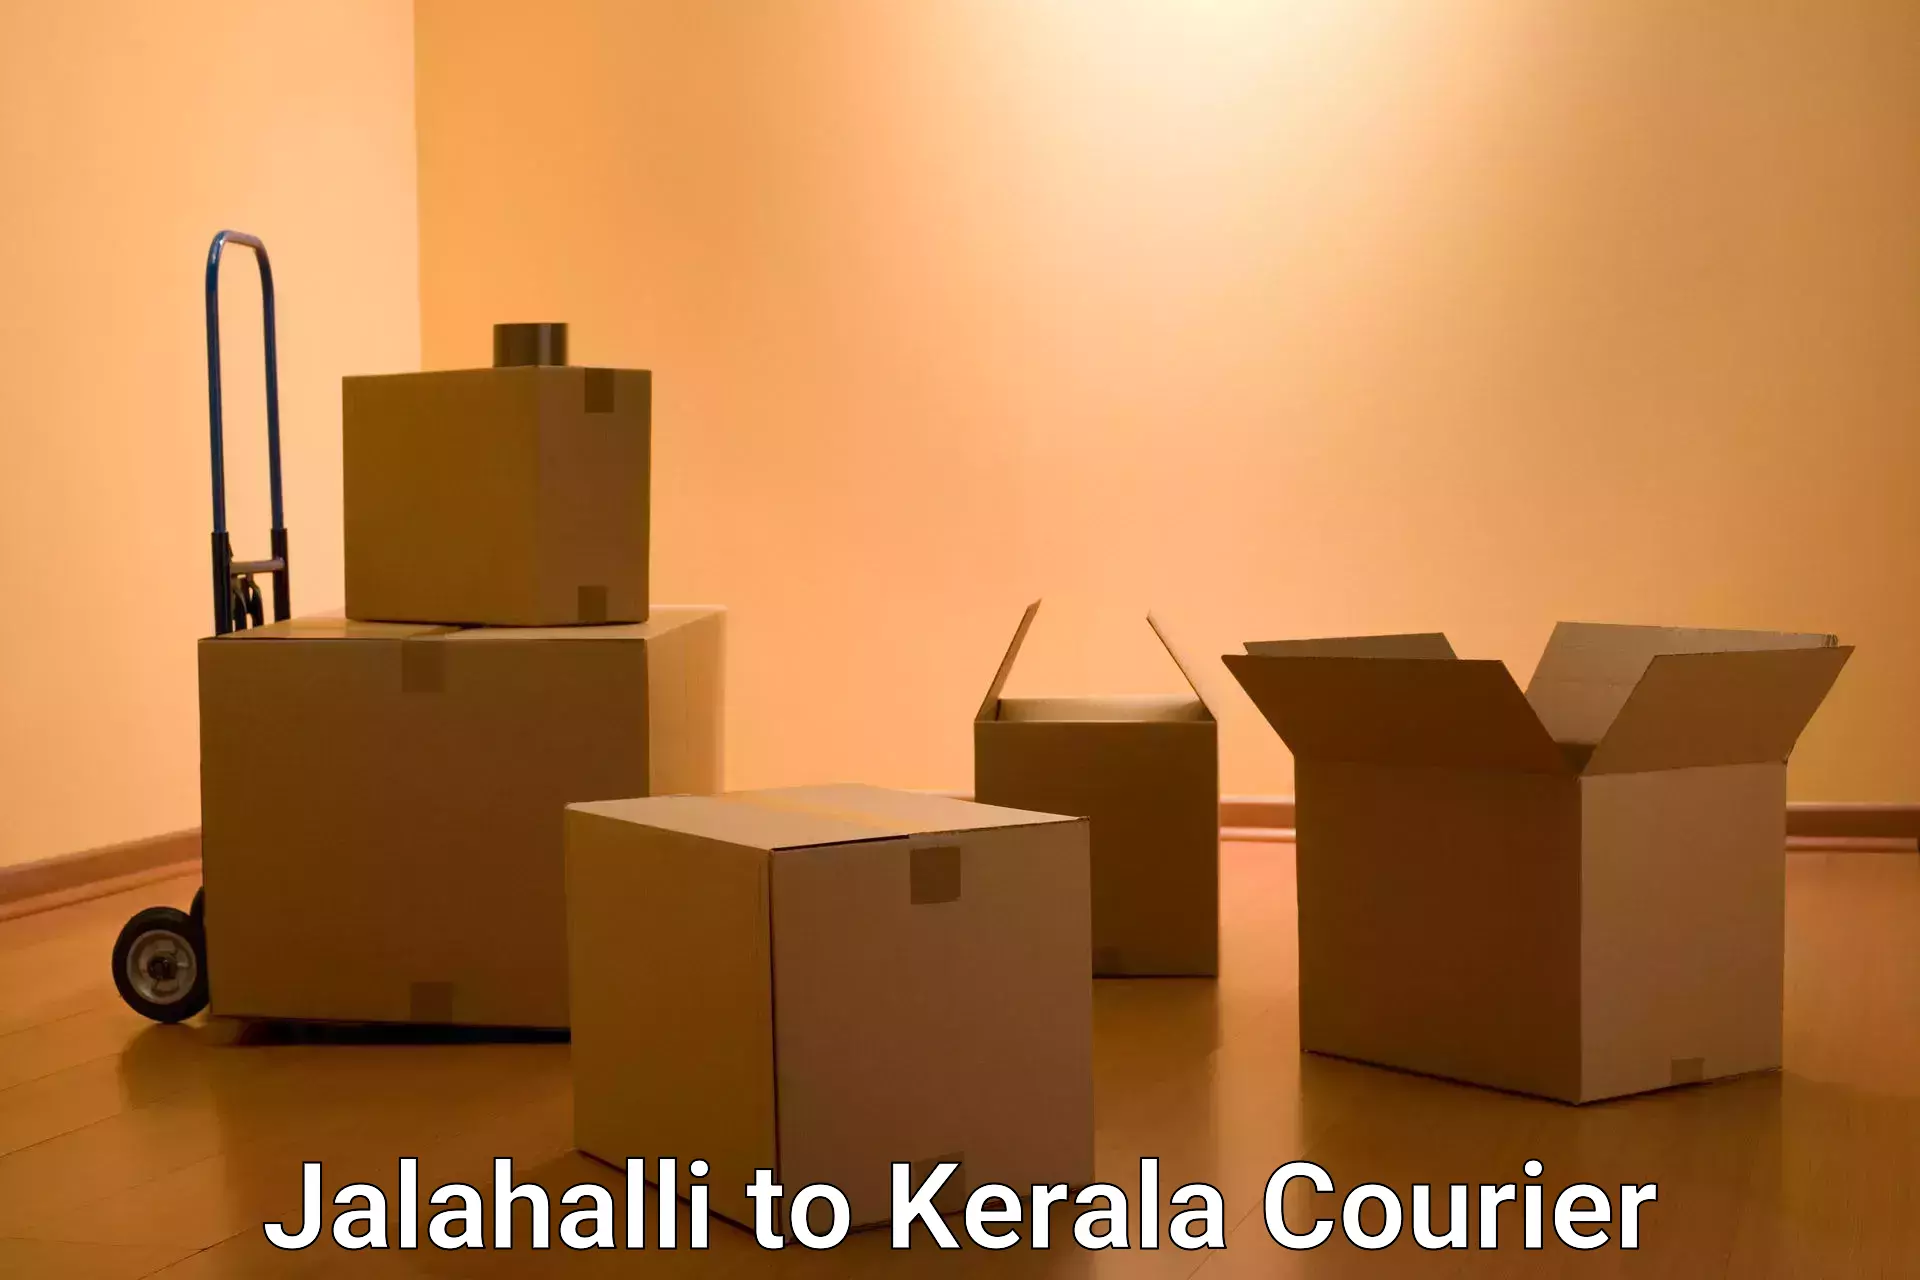 Urban courier service Jalahalli to Kerala